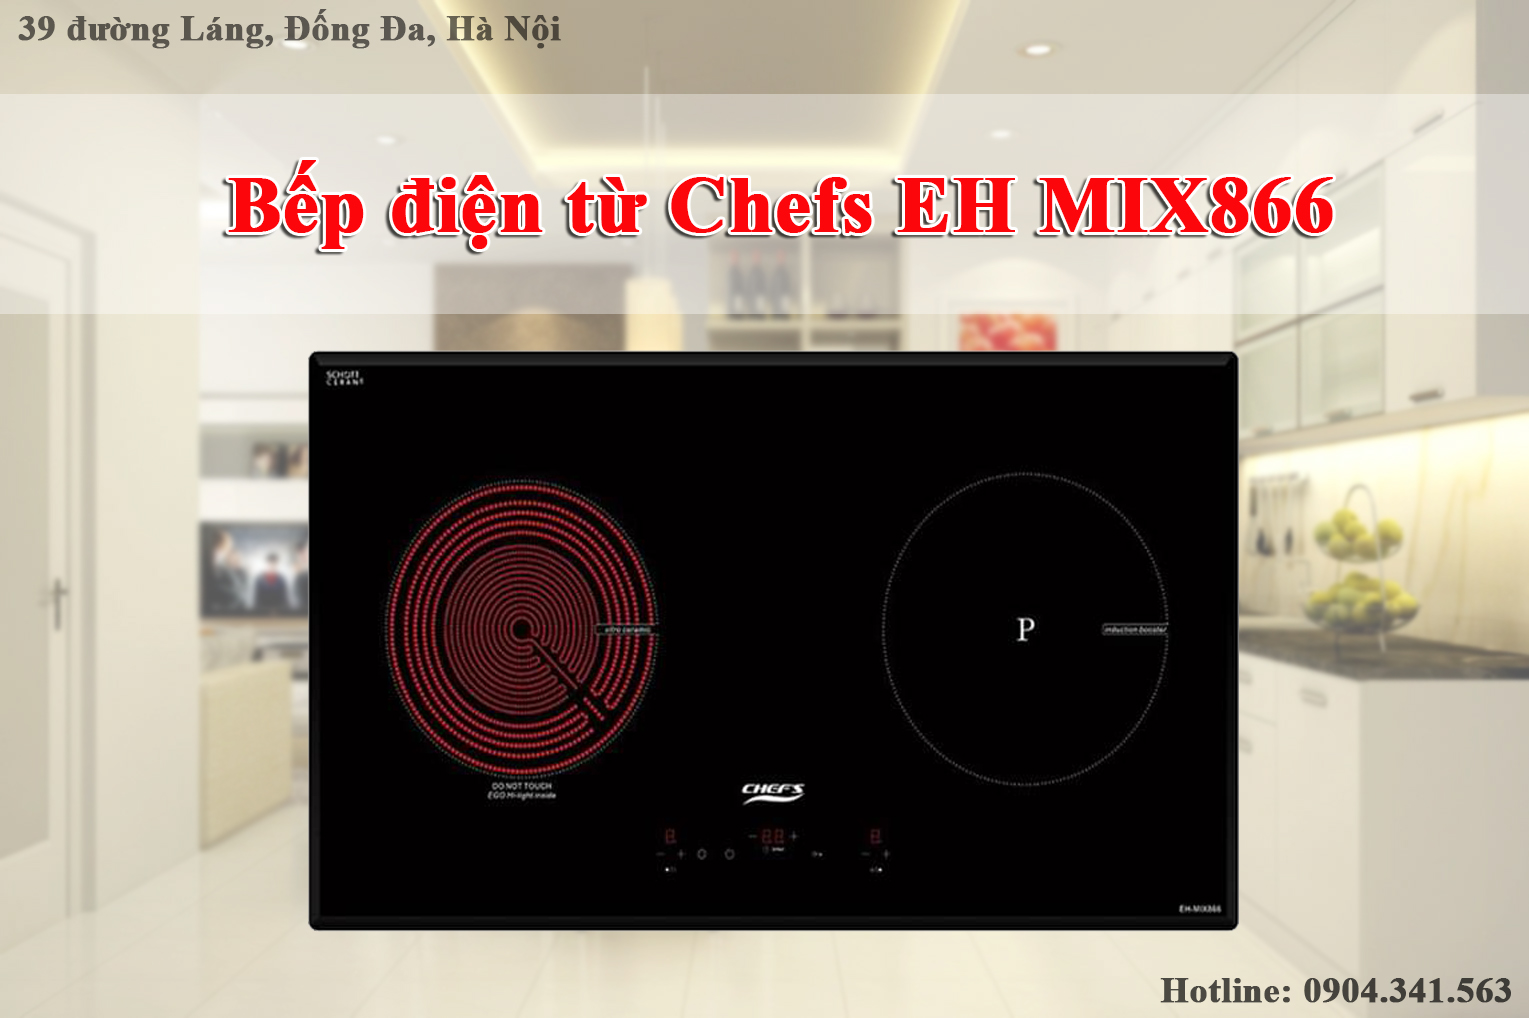 Bếp điện từ Chefs EH MIX866 giá rẻ như cho